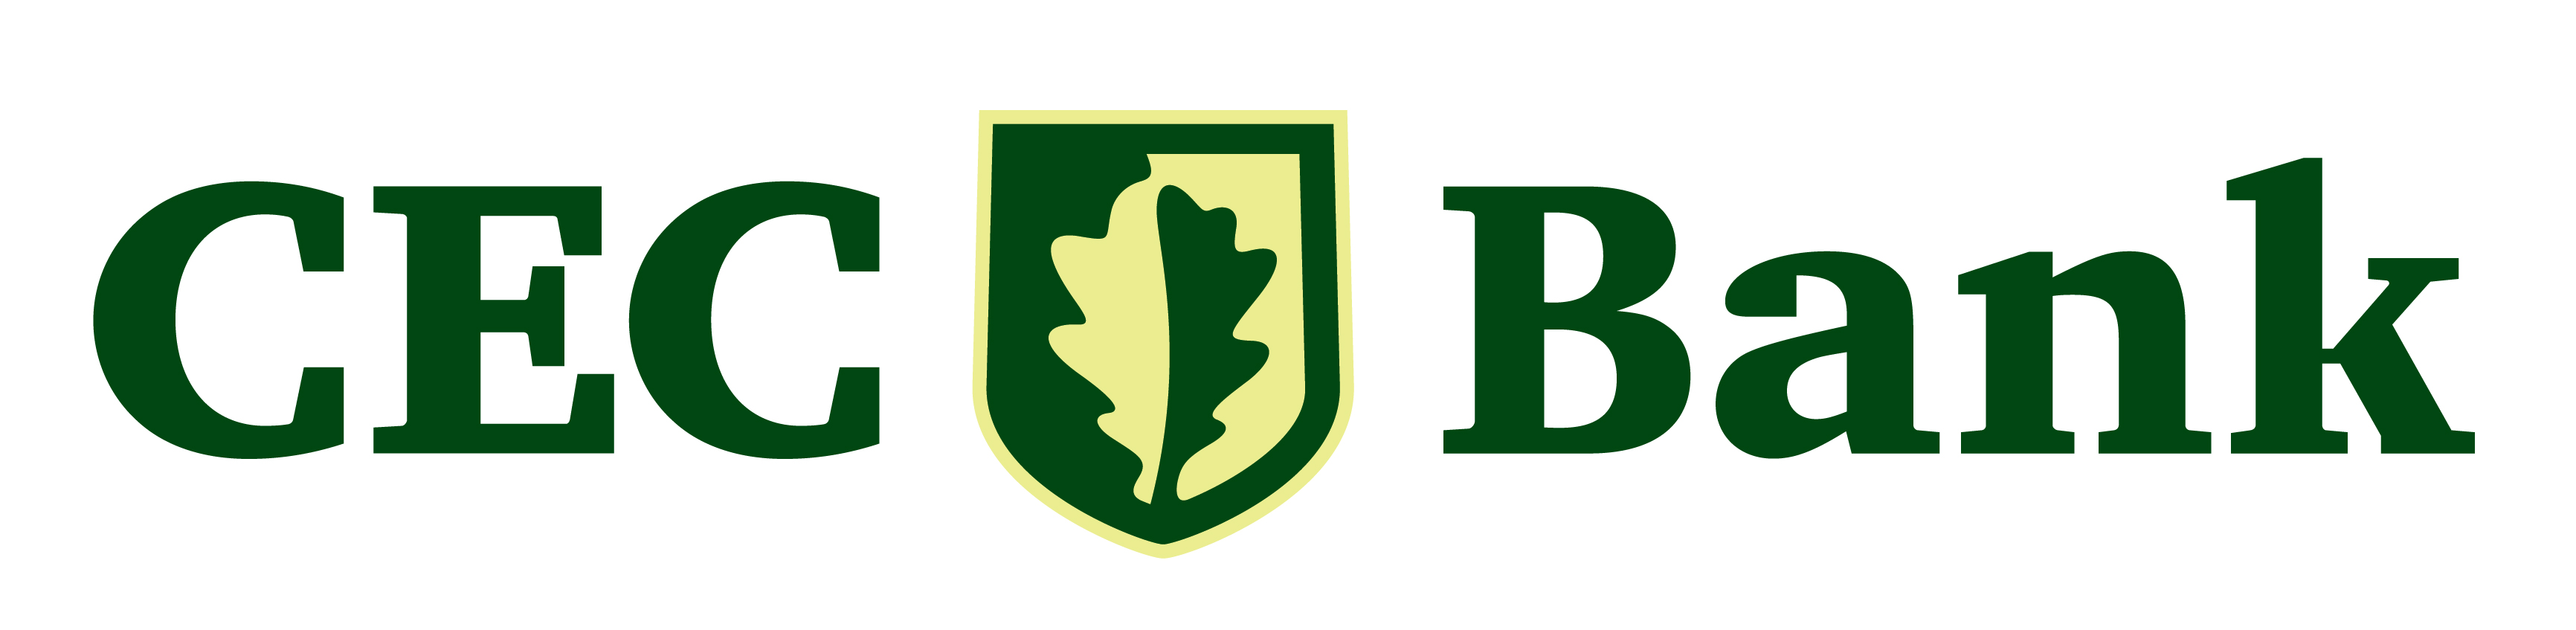 CEC BANK Brand Logo